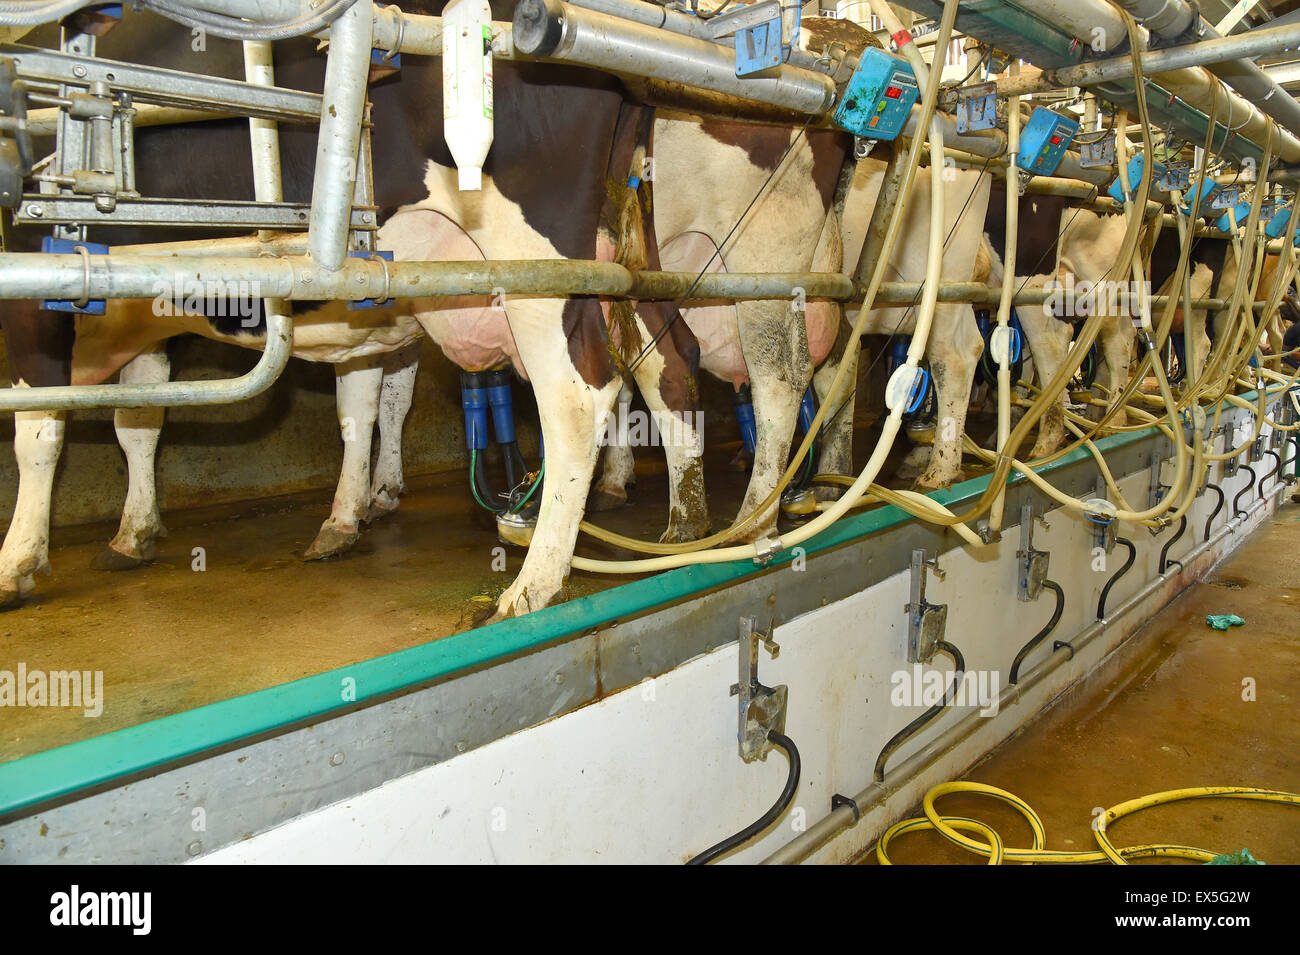 Un puits modernes haute vitesse type station de traire les vaches avec les pompes montées sur des mamelles, sur une ferme laitière. Banque D'Images